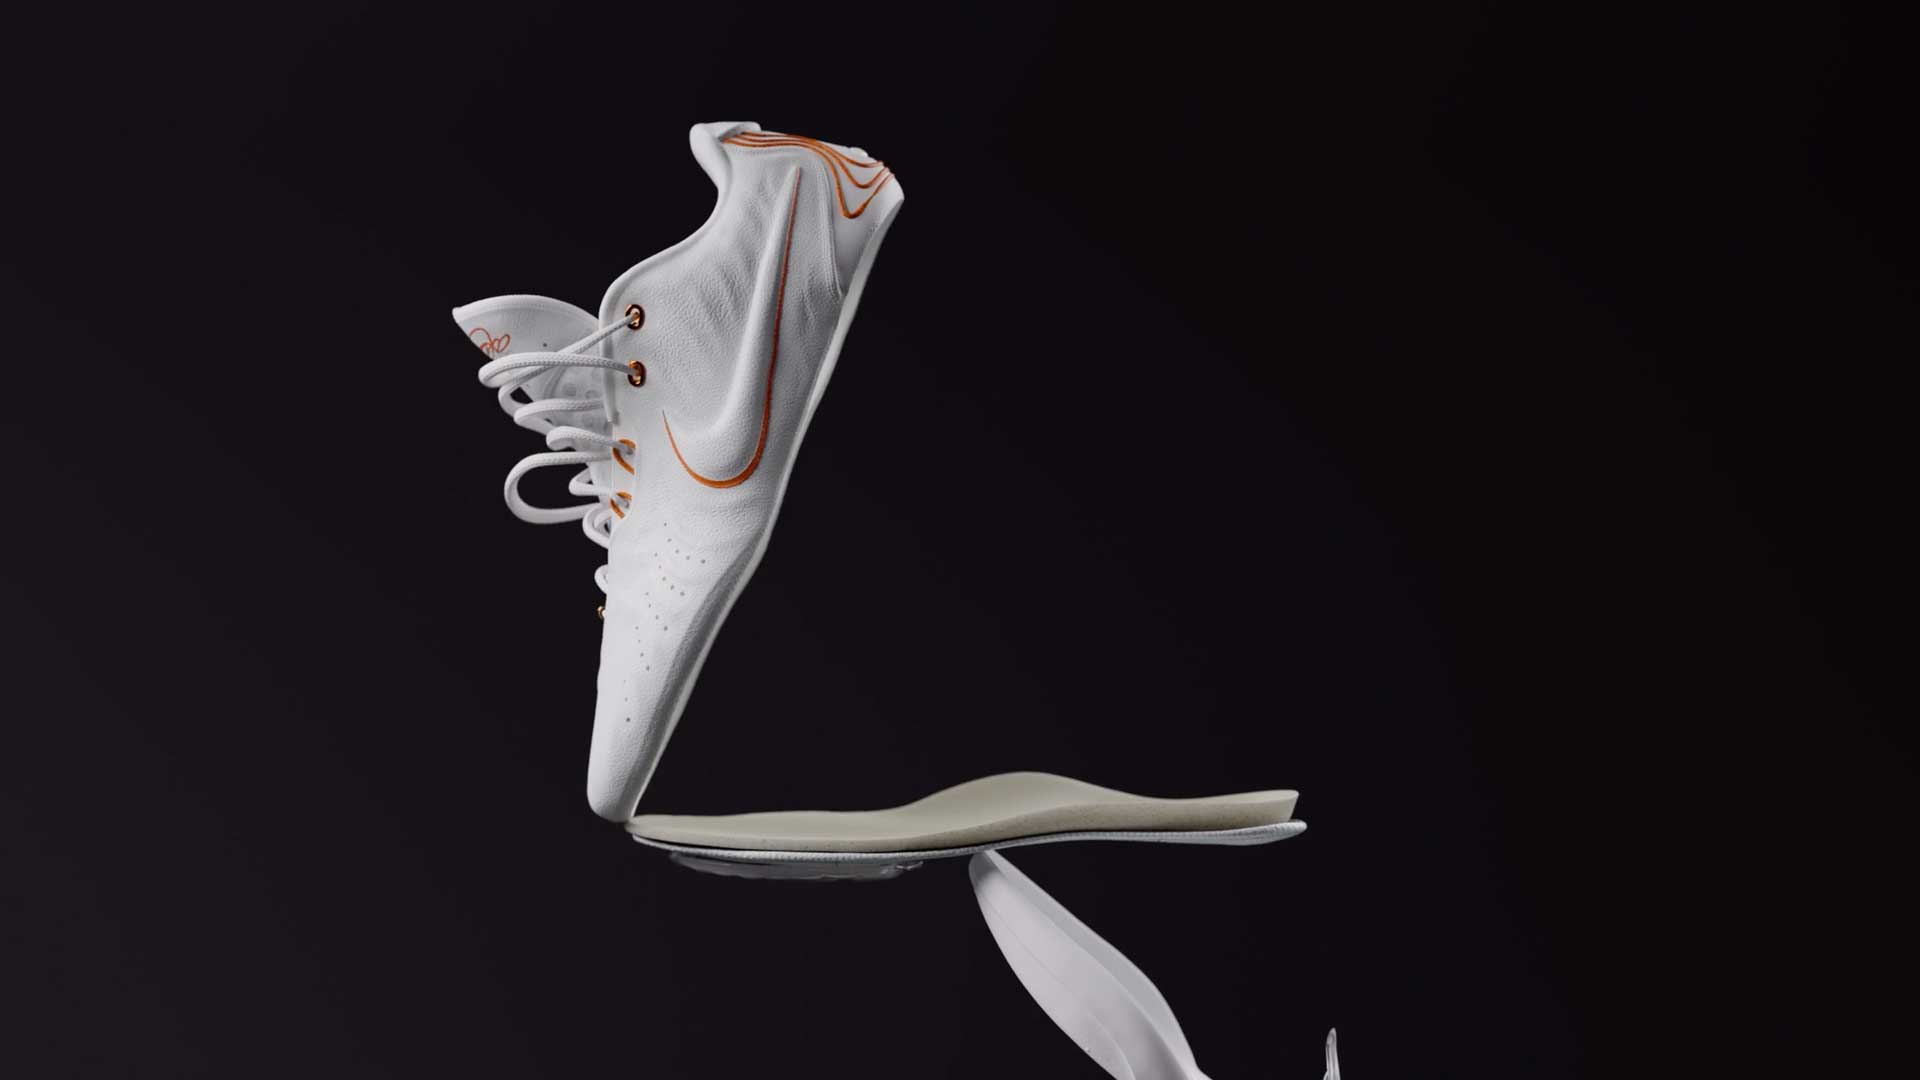 LeBron XXI Nike brand film by Korb | STASH MAGAZINE